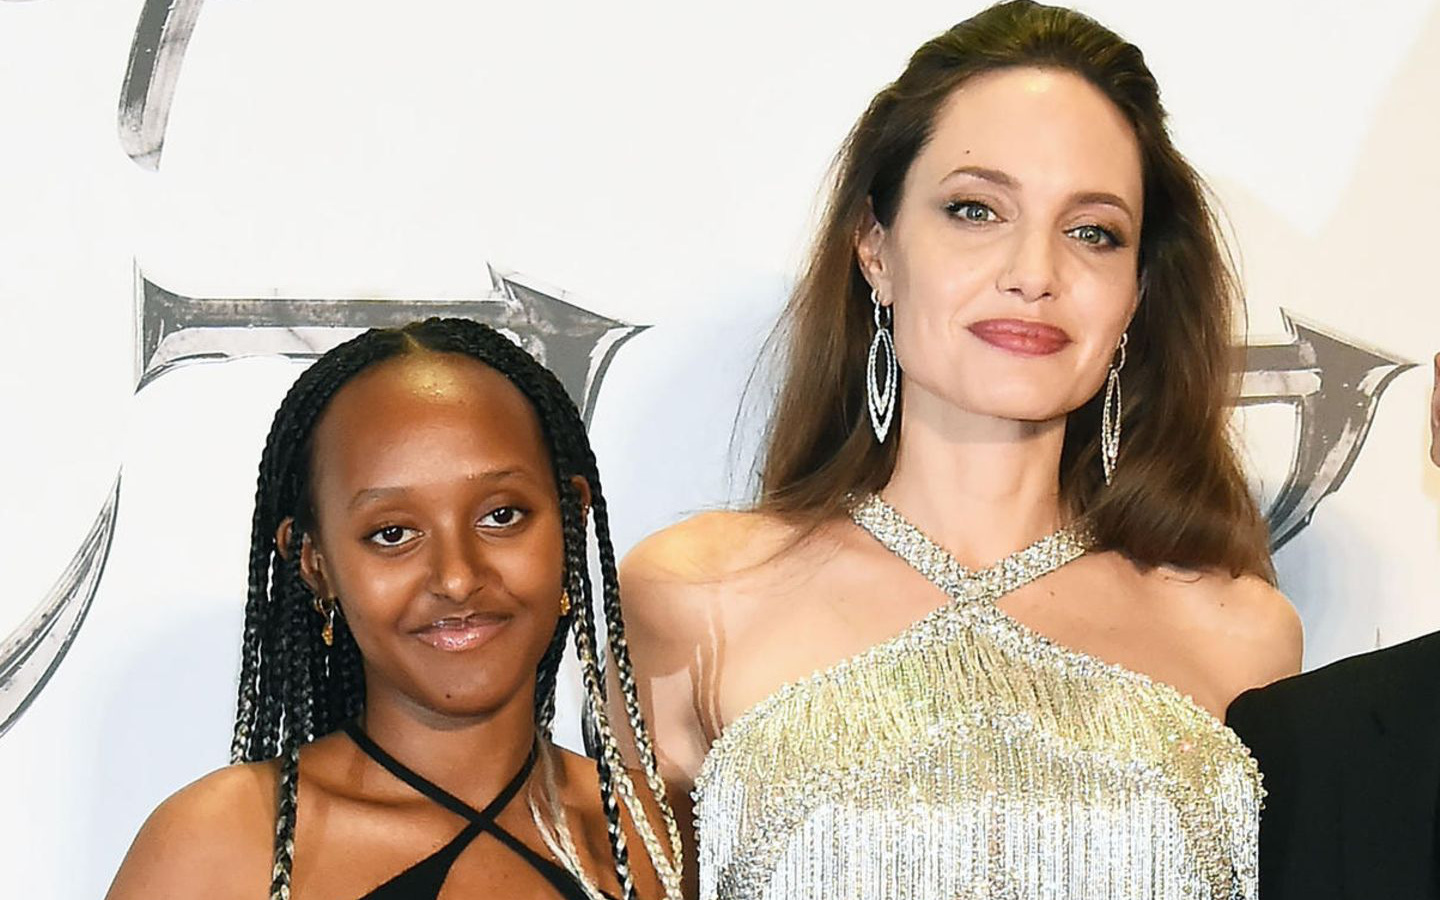 Angelina Jolie bóc trần mặt tối ngành y, tức tưởi kể chuyện đưa con đi phẫu thuật: “Y tá bảo hãy gọi bác sĩ nếu da cháu chuyển màu hồng”